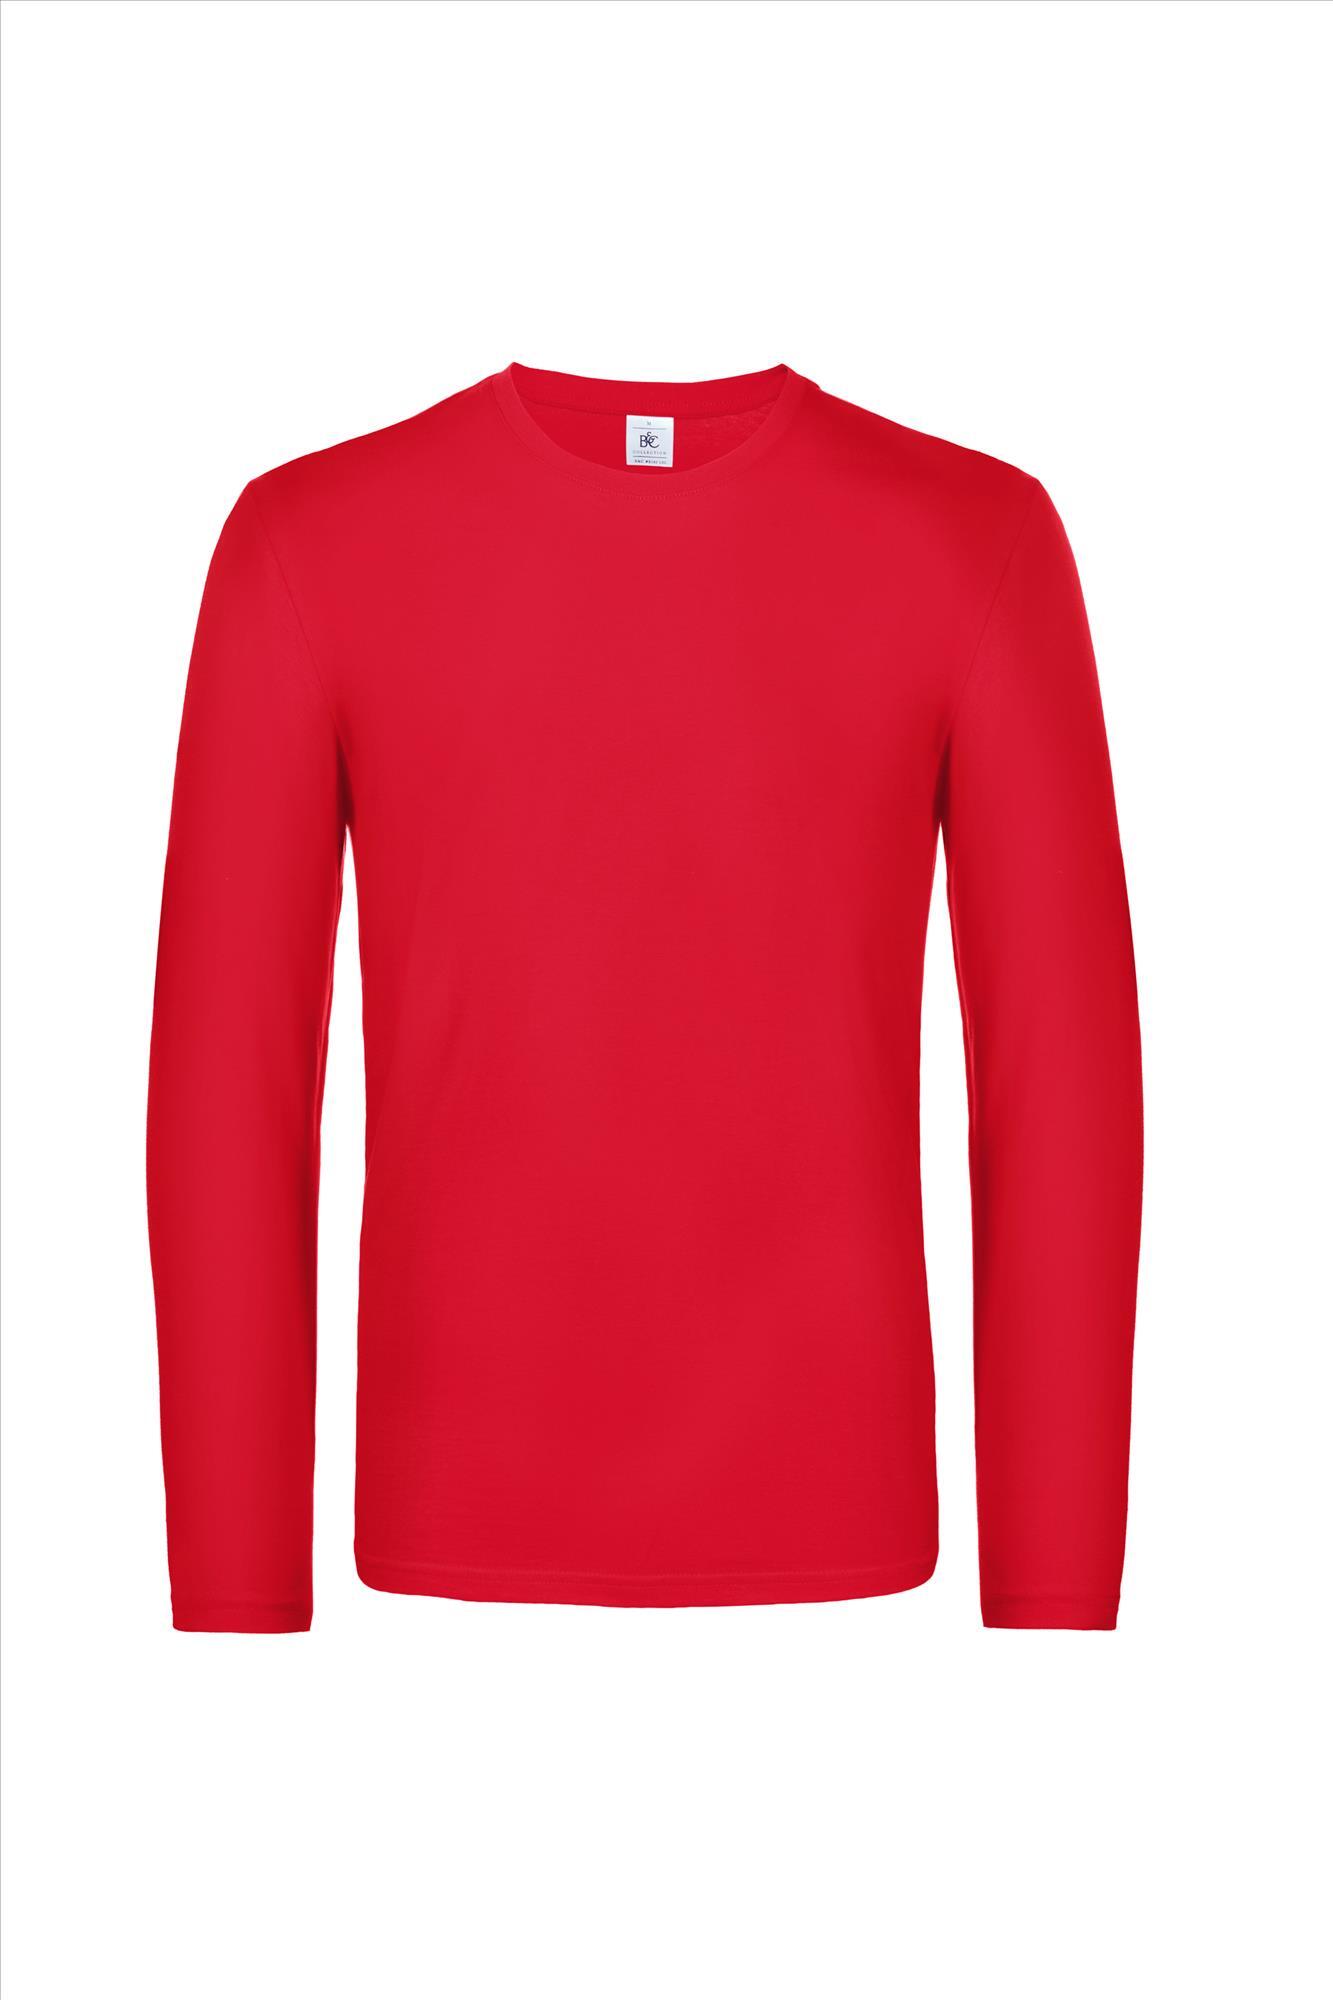 Modern zware kwaliteit heren T-shirt met lange mouwen rood te personaliseren